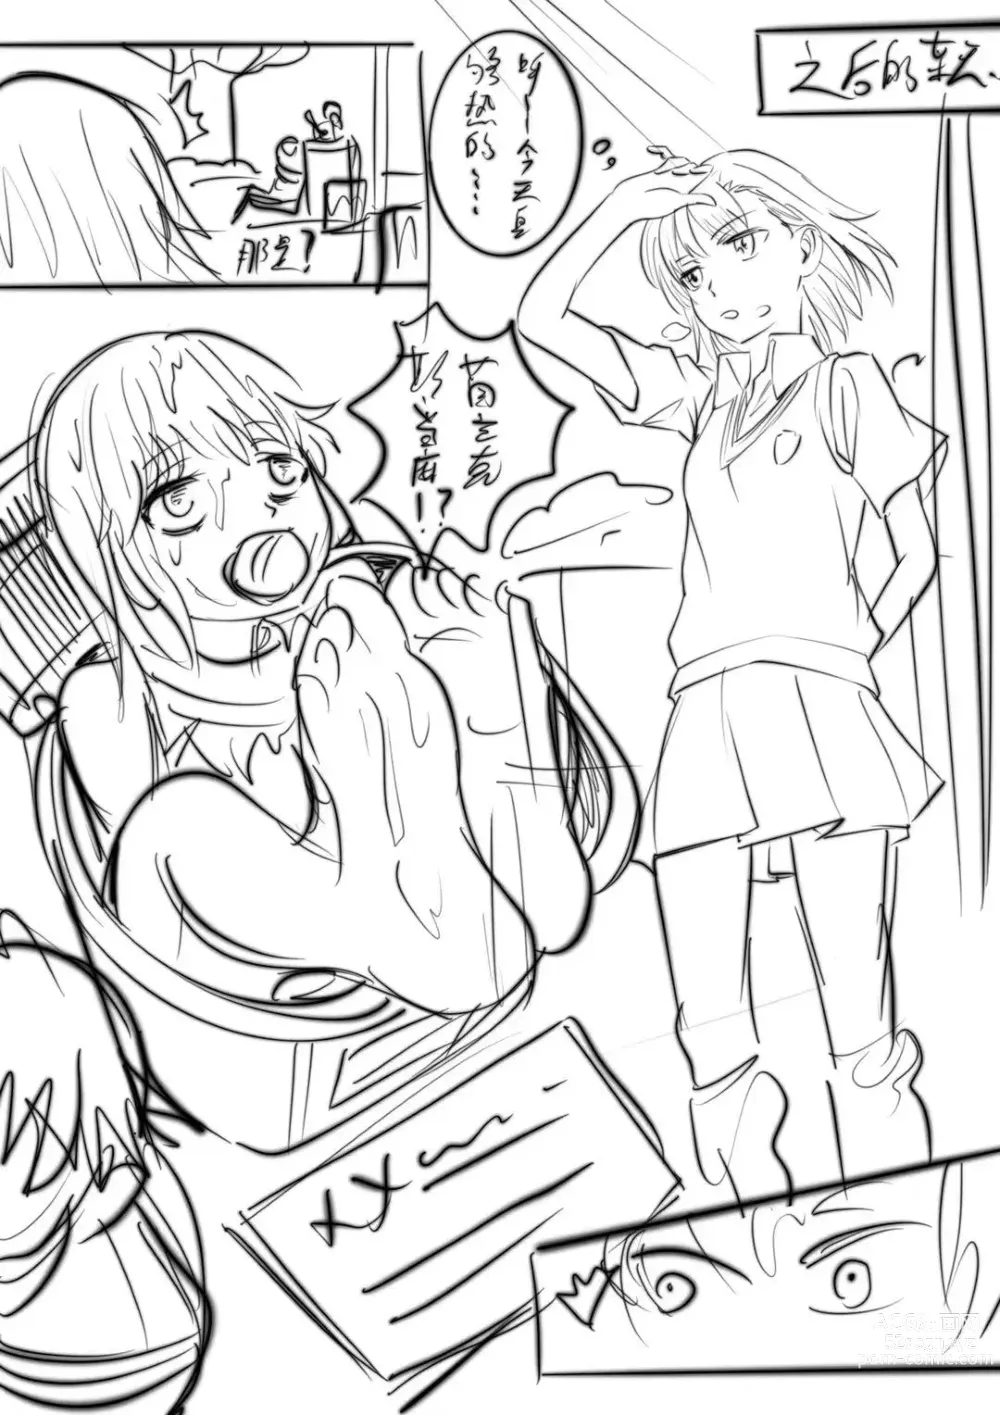 Page 15 of doujinshi 当麻面前轮流玩弄茵蒂克丝，闻她运动后的脚臭袜臭靴臭腋臭【草稿】